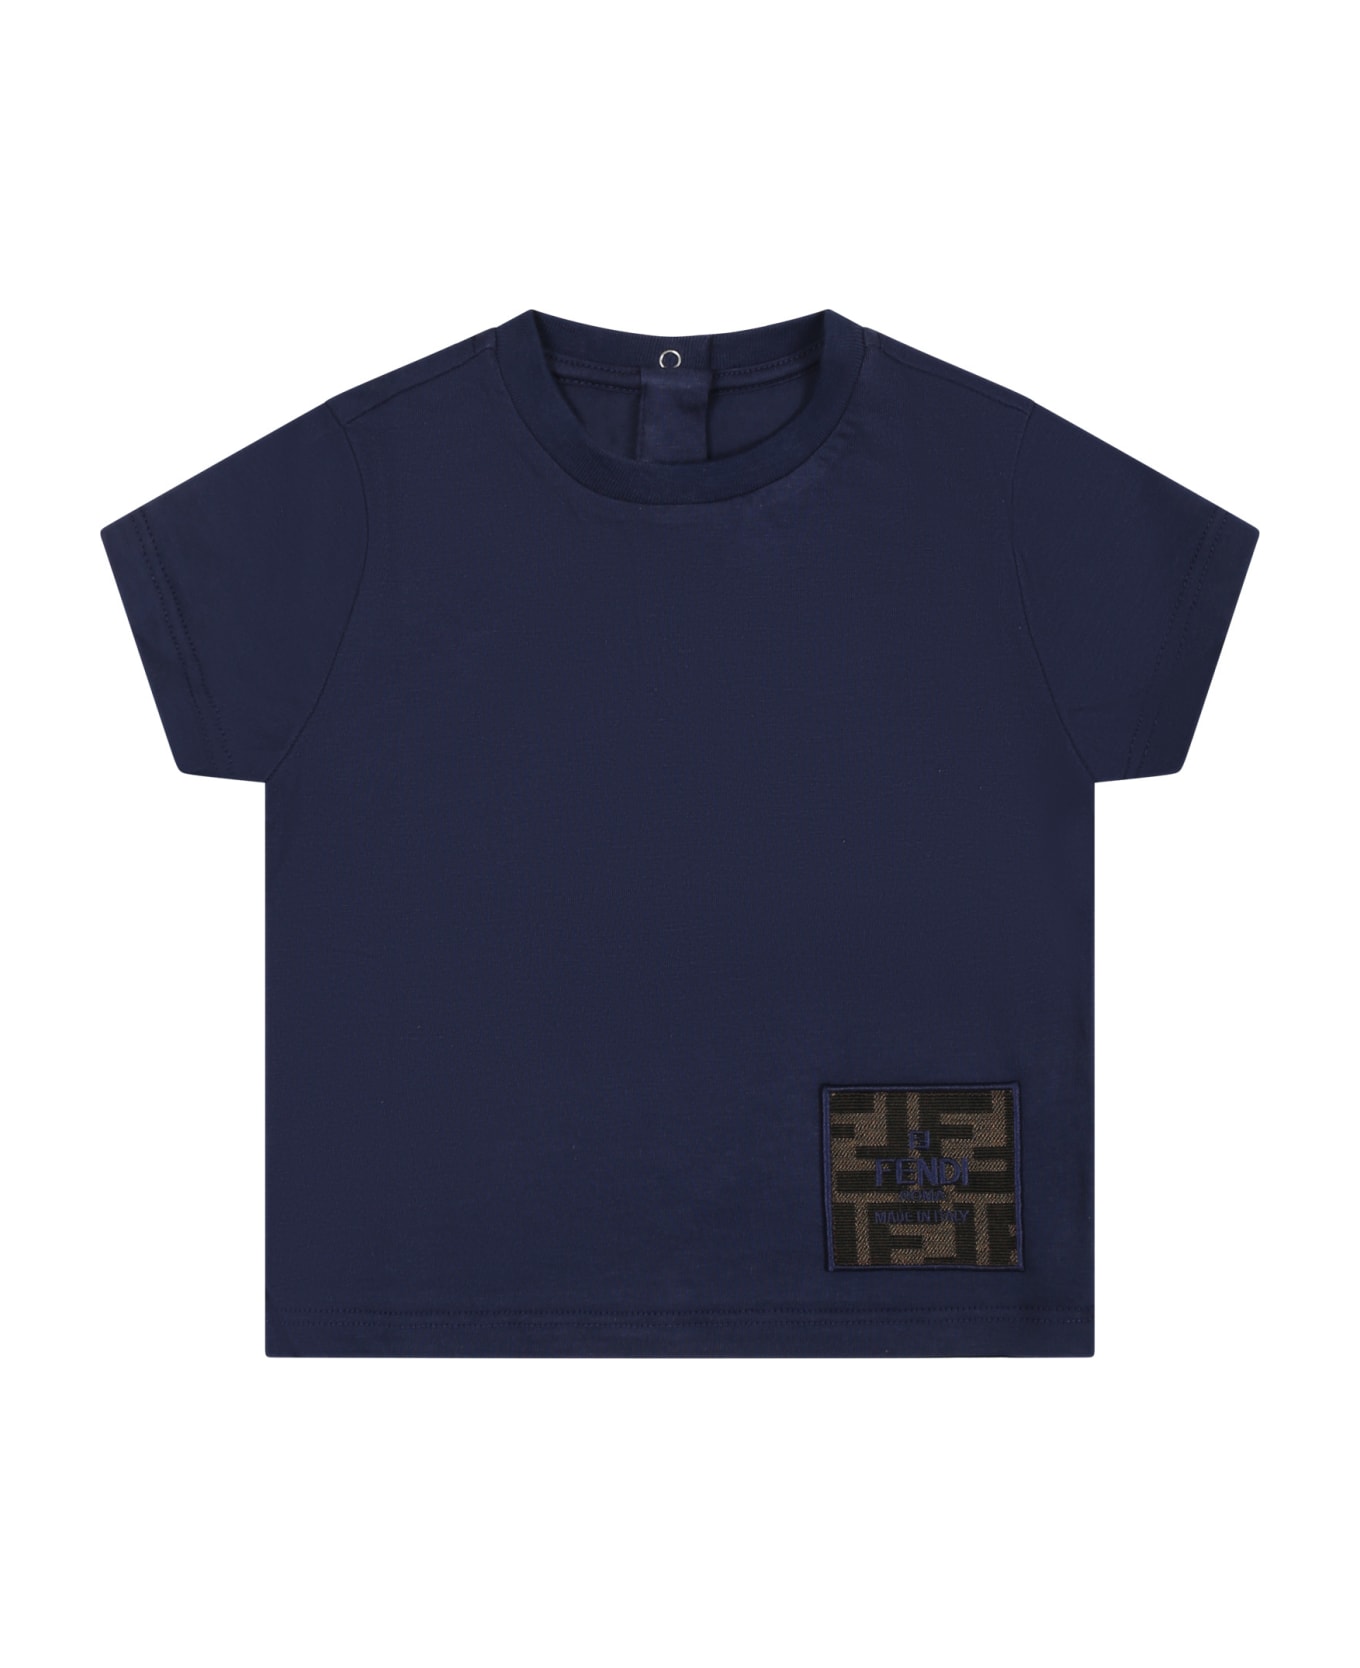 Fendi Blue T-shirt For Baby Boy With Ff - Blu